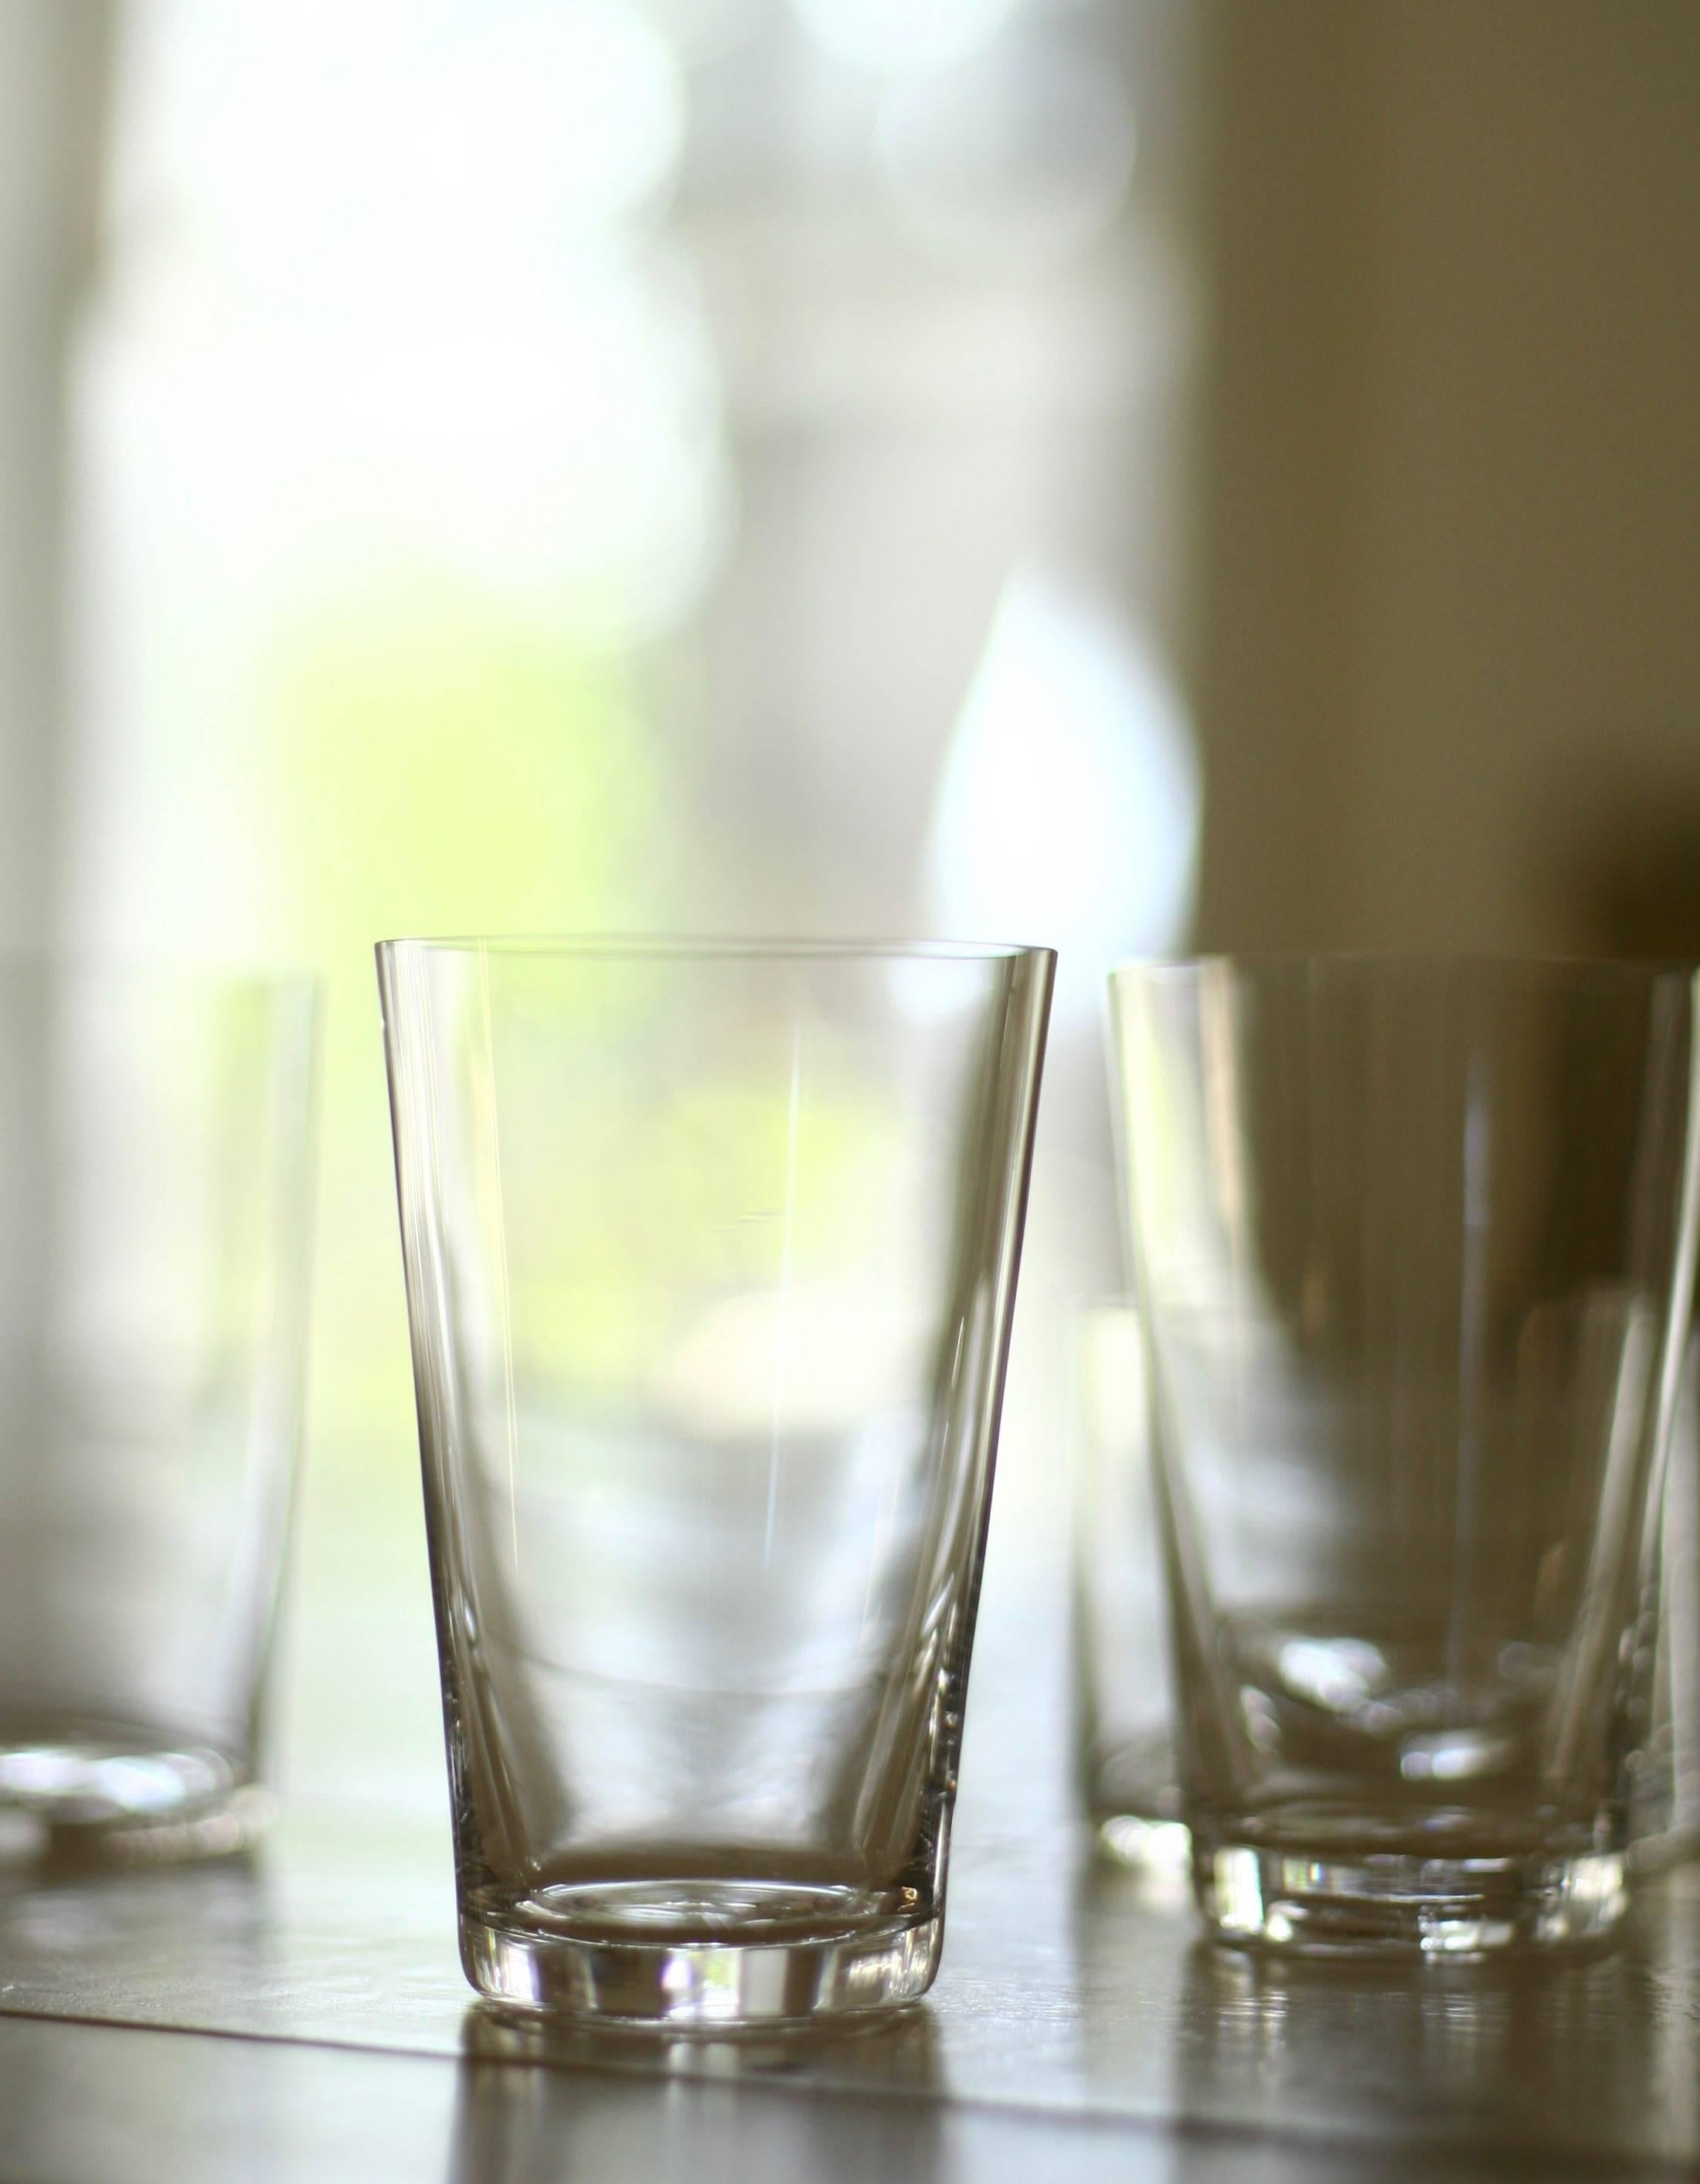 Lancés avec Takashimaya en 1999, ces verres à vin blanc en cristal soufflé à la bouche sont devenus un classique moderne. Chaque pièce de Deborah Ehrlich est conçue pour l'extraordinaire force et clarté du cristal suédois. La simplicité du design,